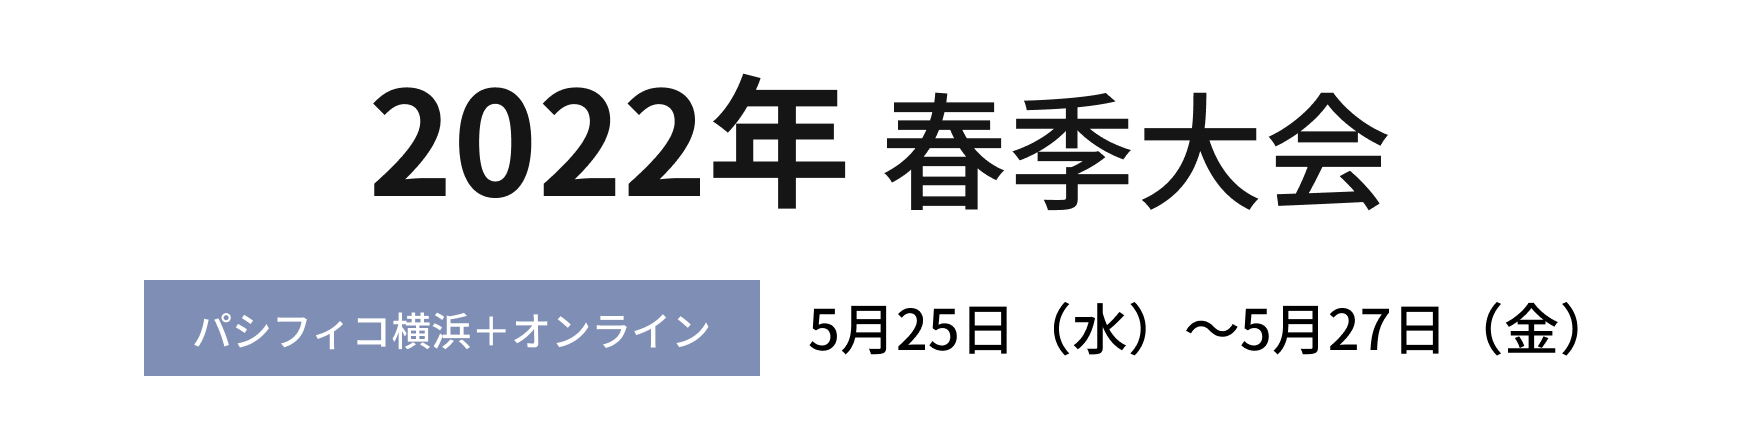 2022年春季大会 パシフィコ横浜＋オンライン 10月12日 (水)～10月14日 (金)